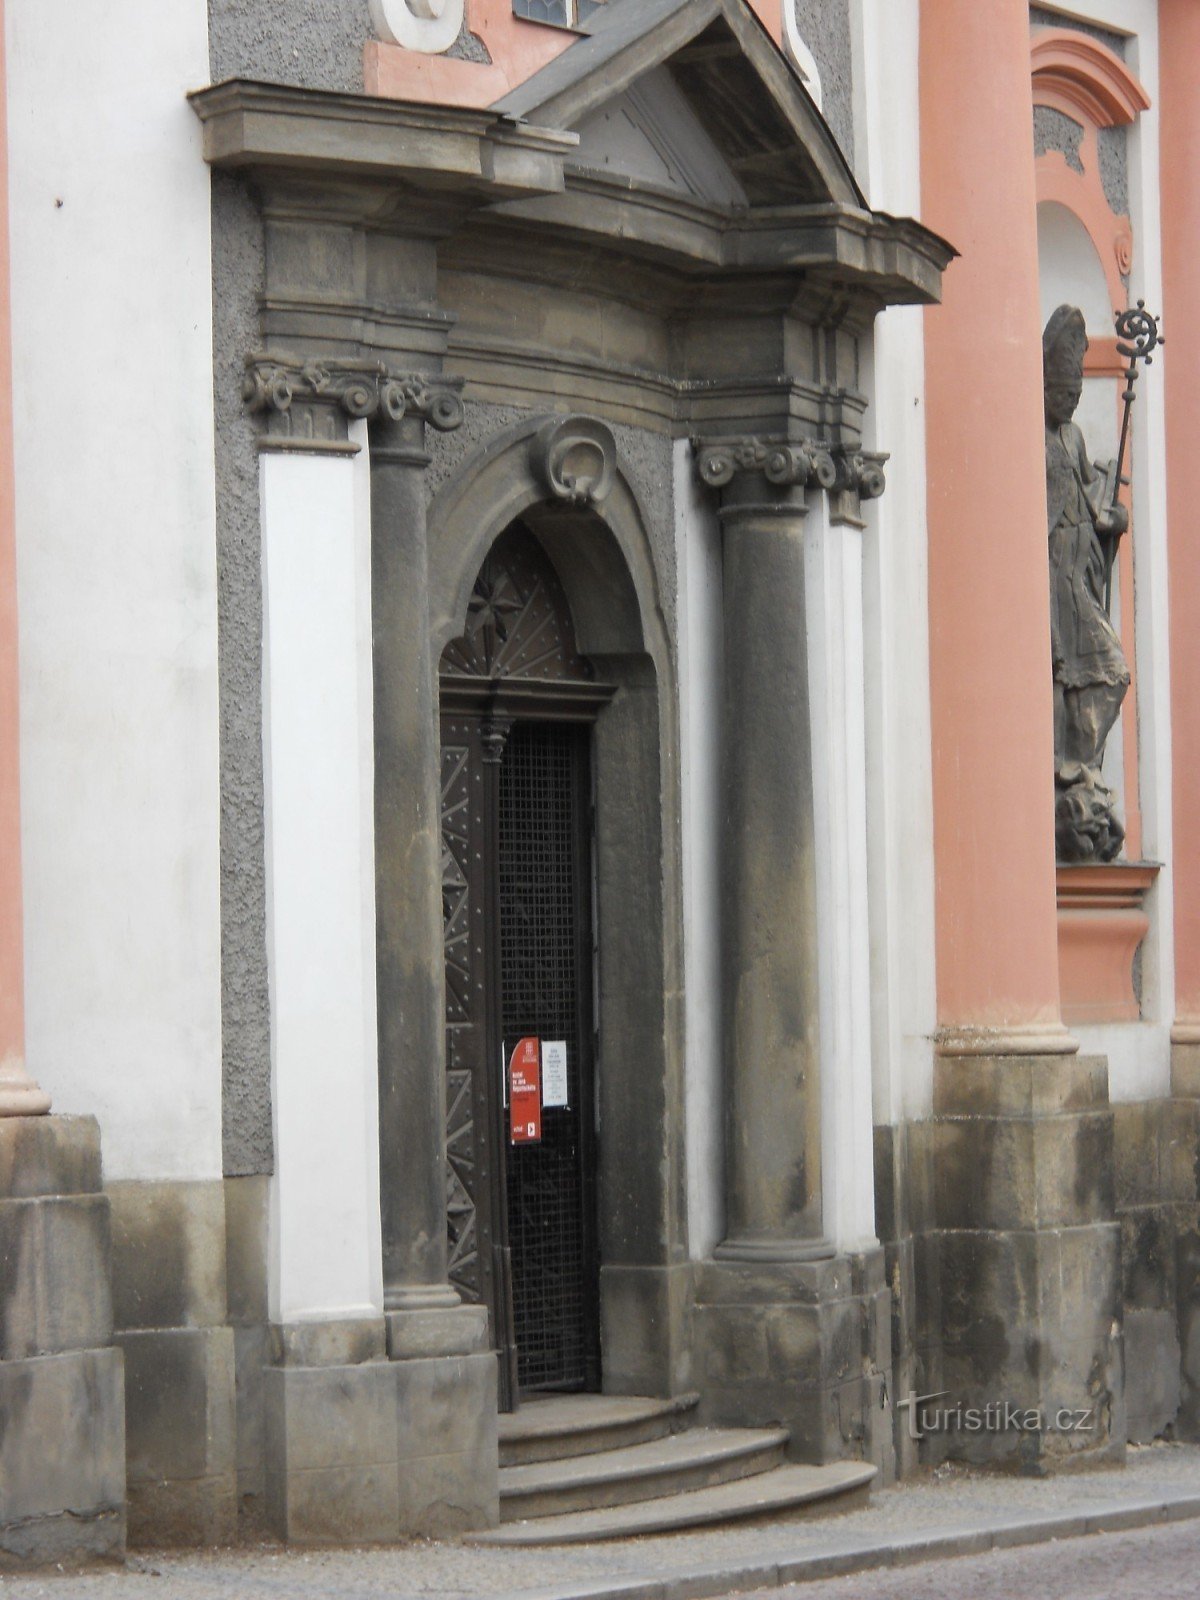 Nepomuki Szent János templom - bejárat